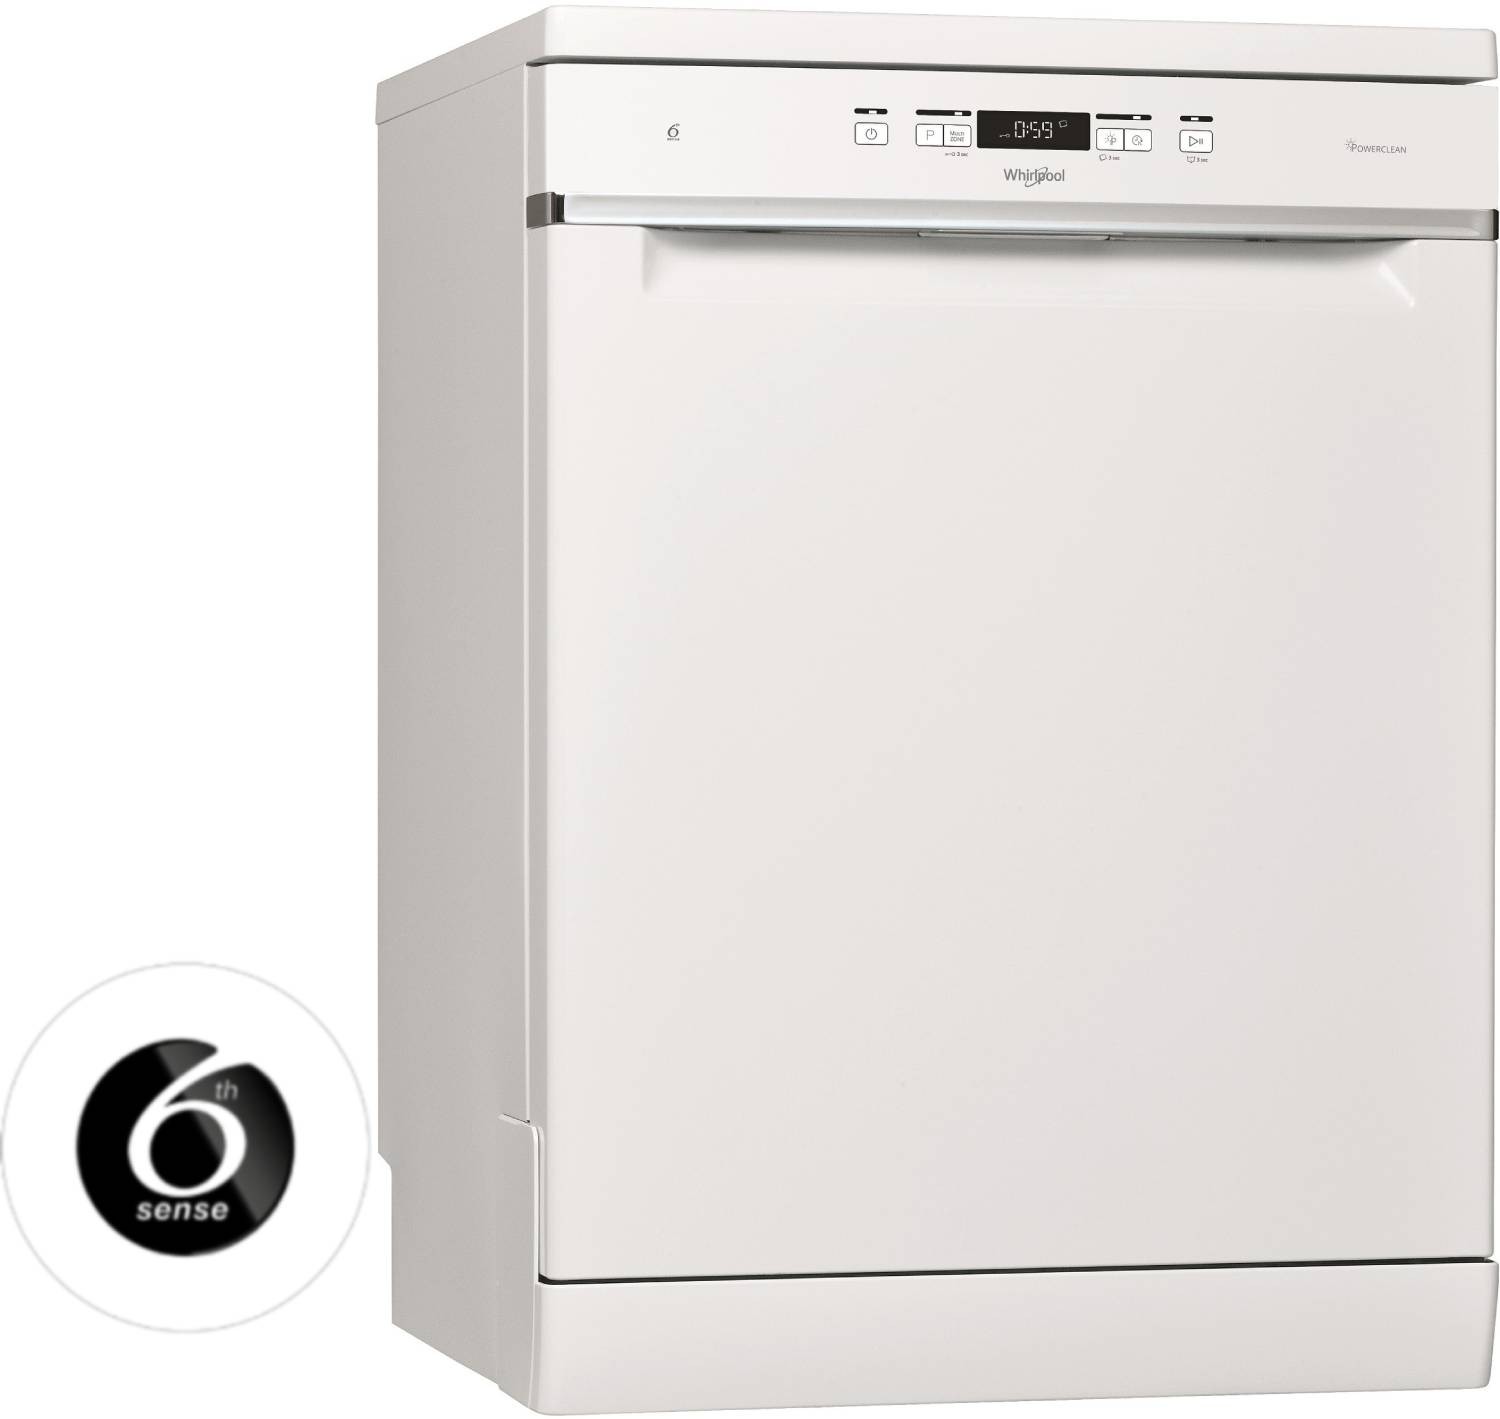 Lave-vaisselle BEKO DFN113 - Super U, Hyper U, U Express - www